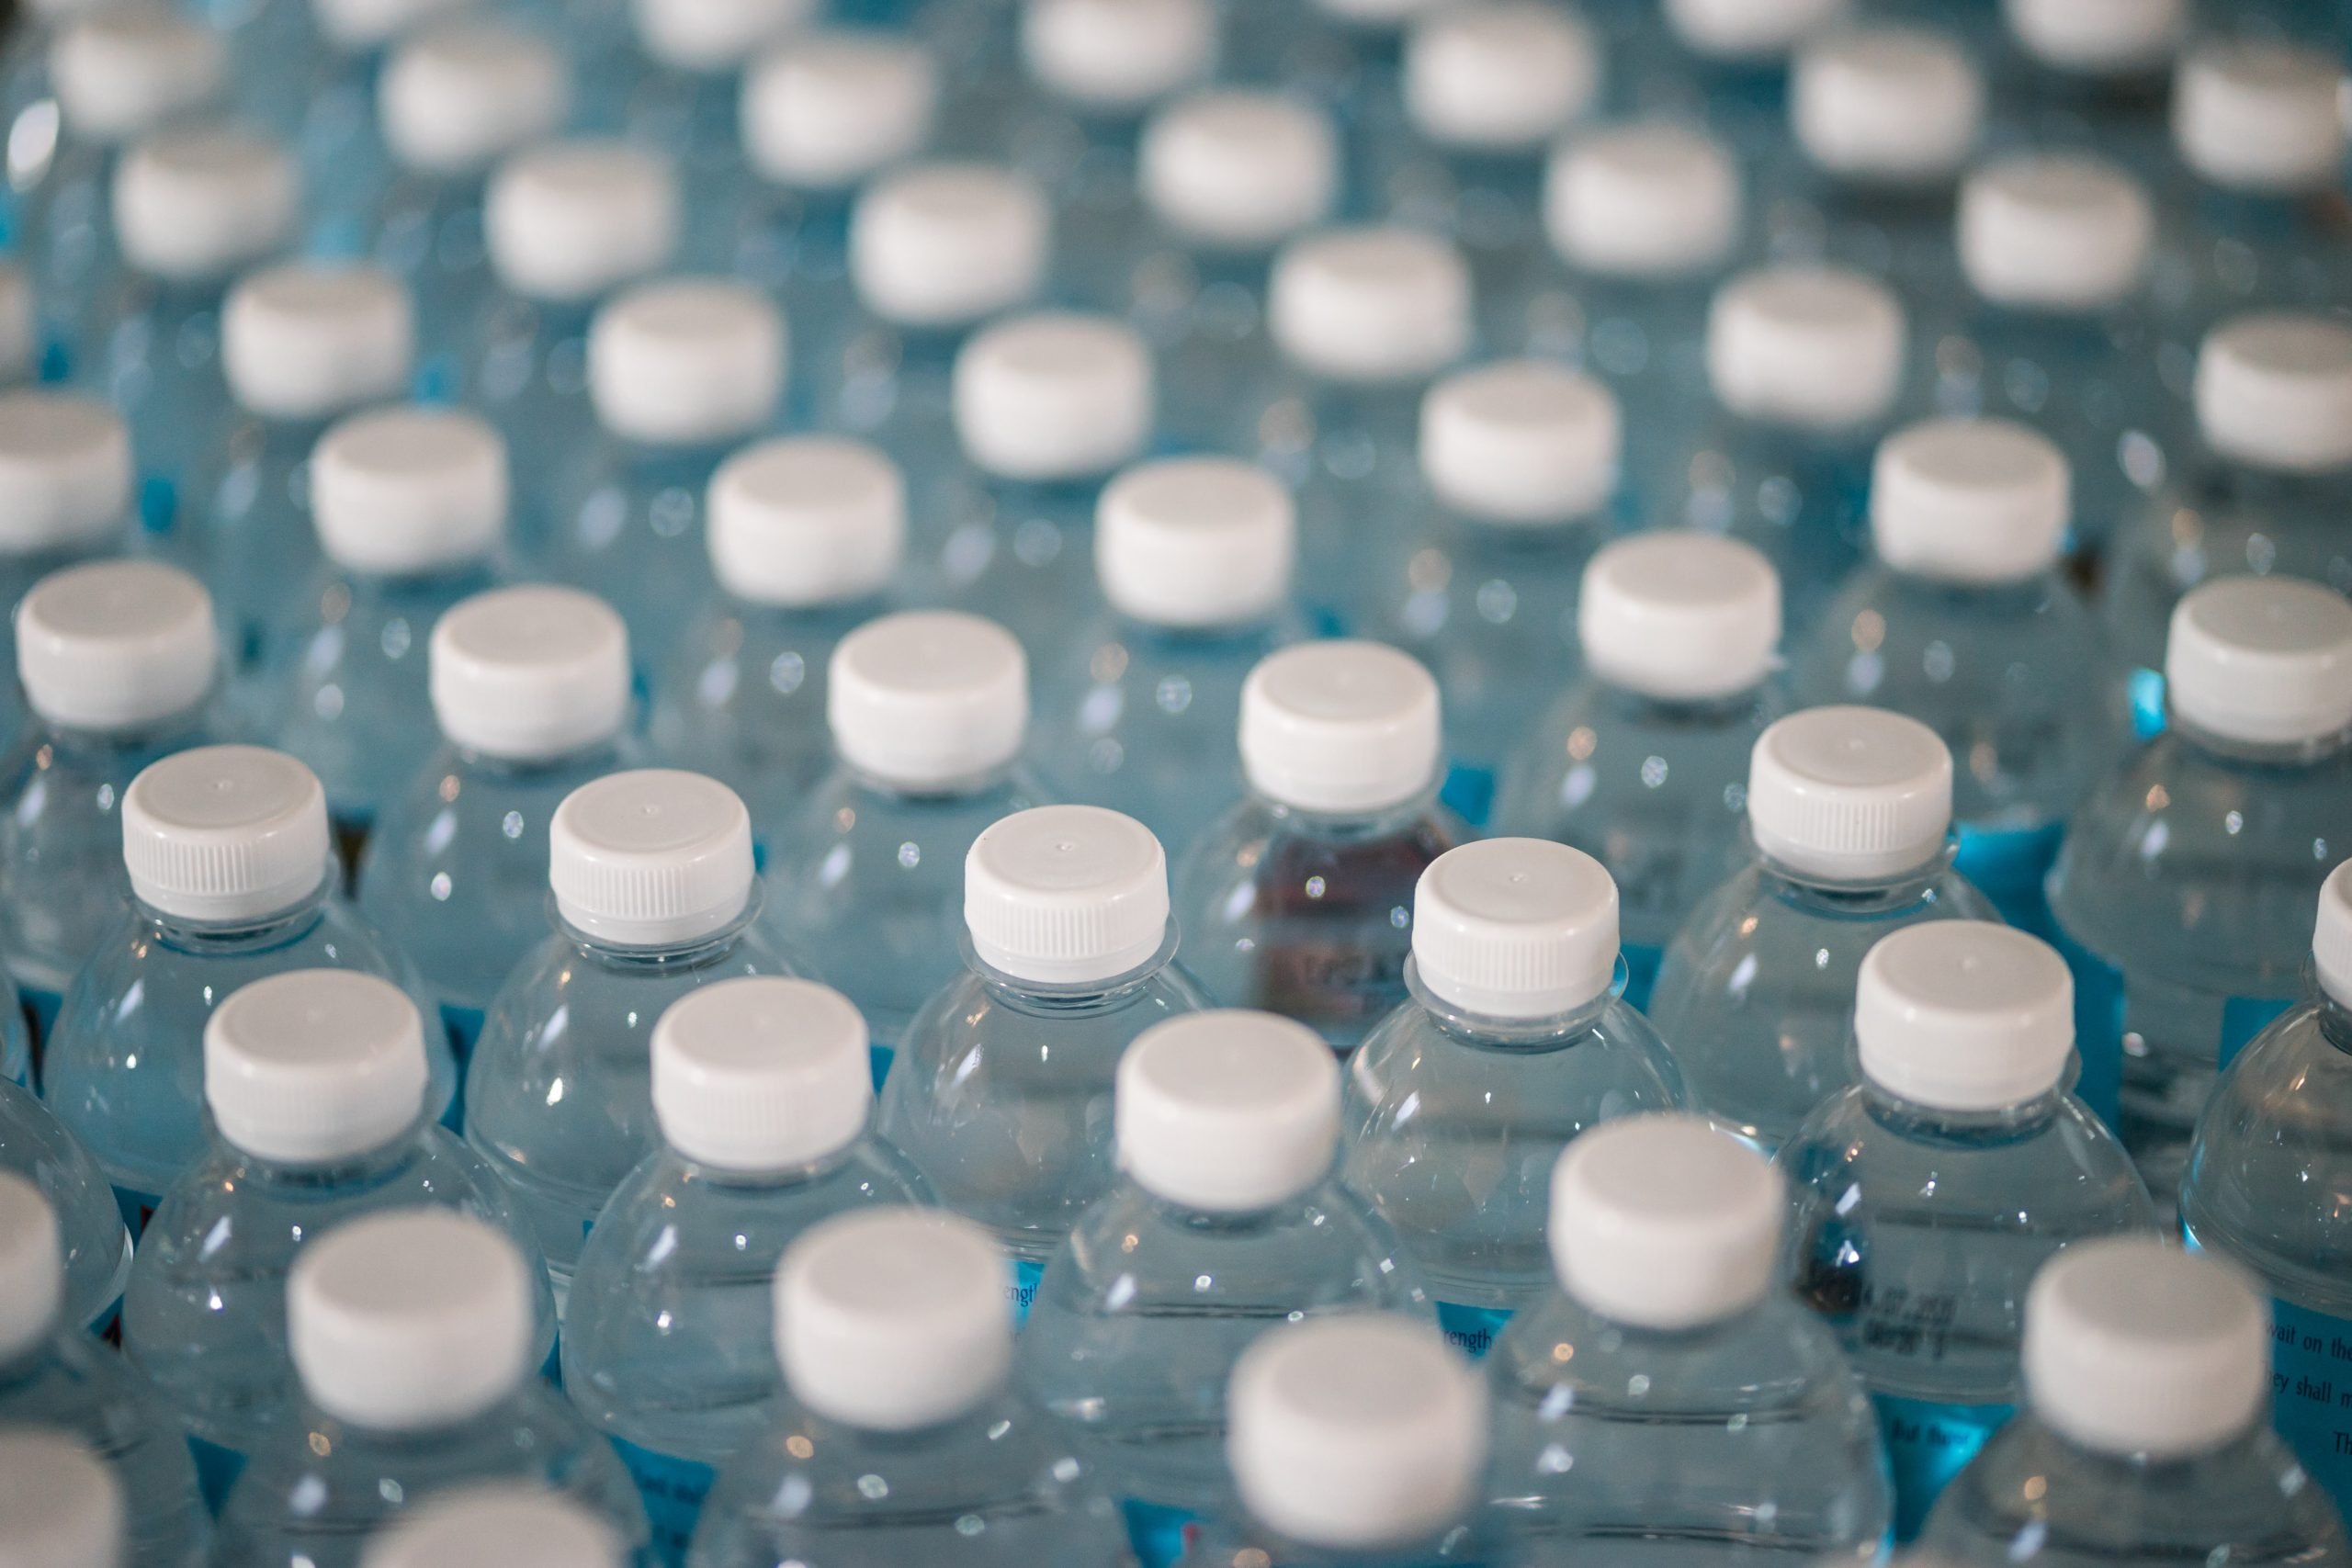 Study: BPA Alternatives May Be Harmful